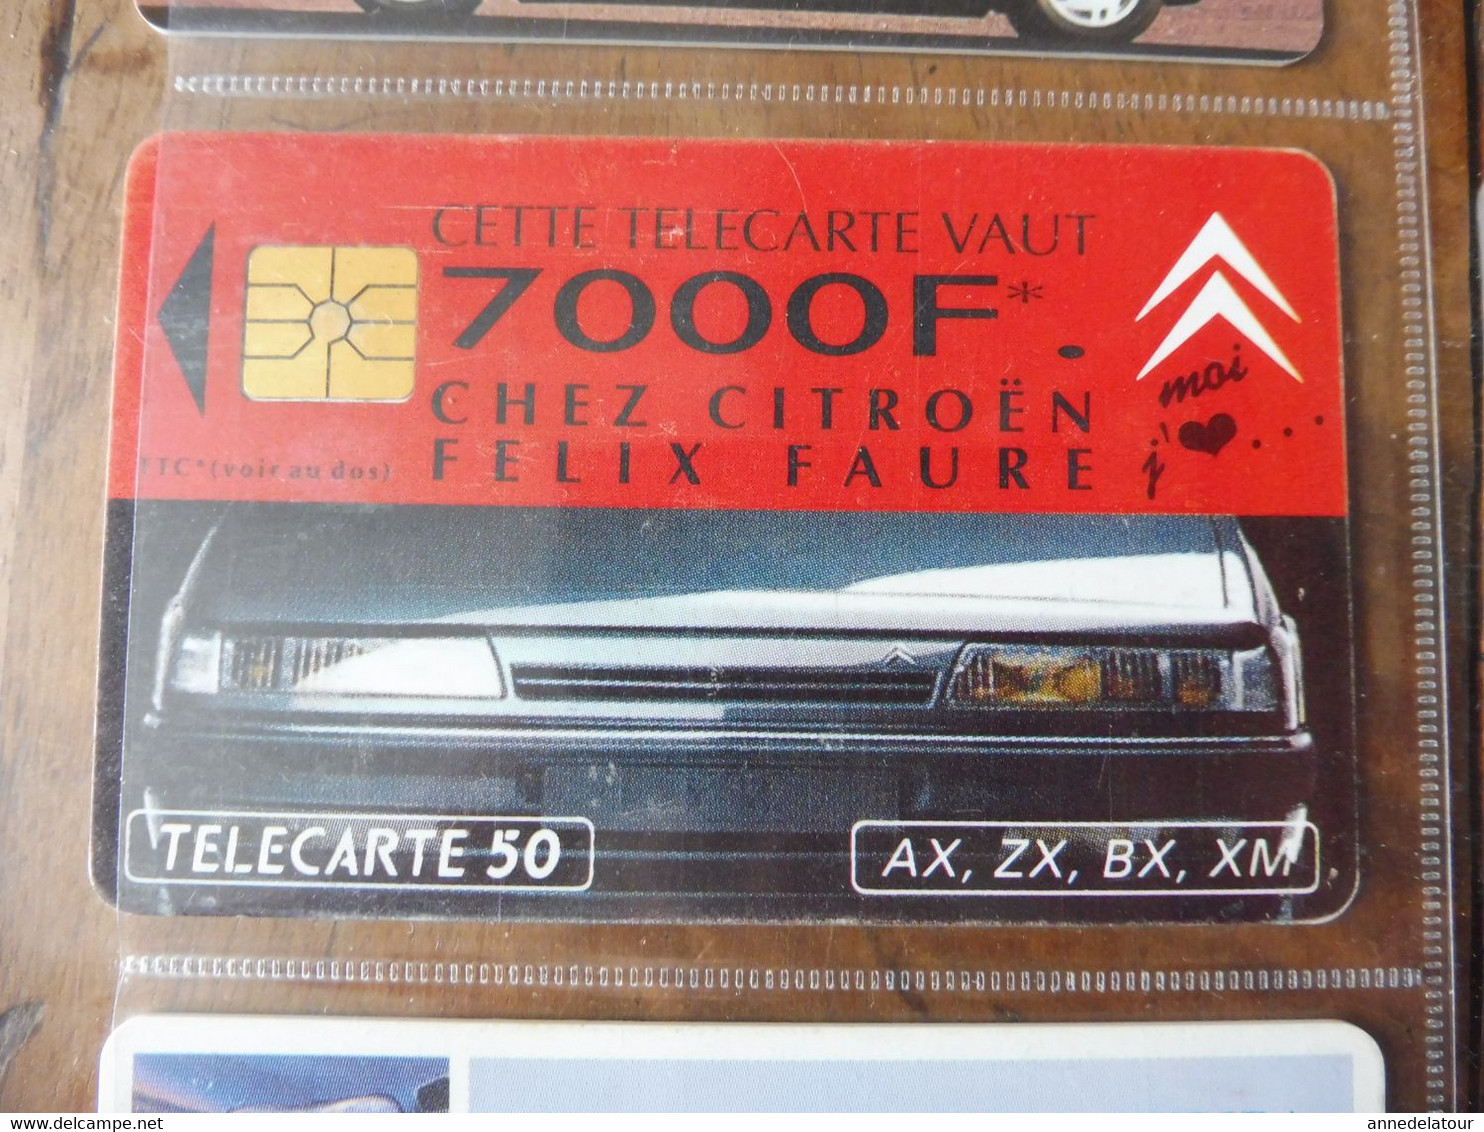 10 télécartes (lié à l'automobile) FRANCE TELECOM  ->  Peugeot - Assistance, DAEWOO NUBIRA, Citroën, LAGUNA, MATRA, etc